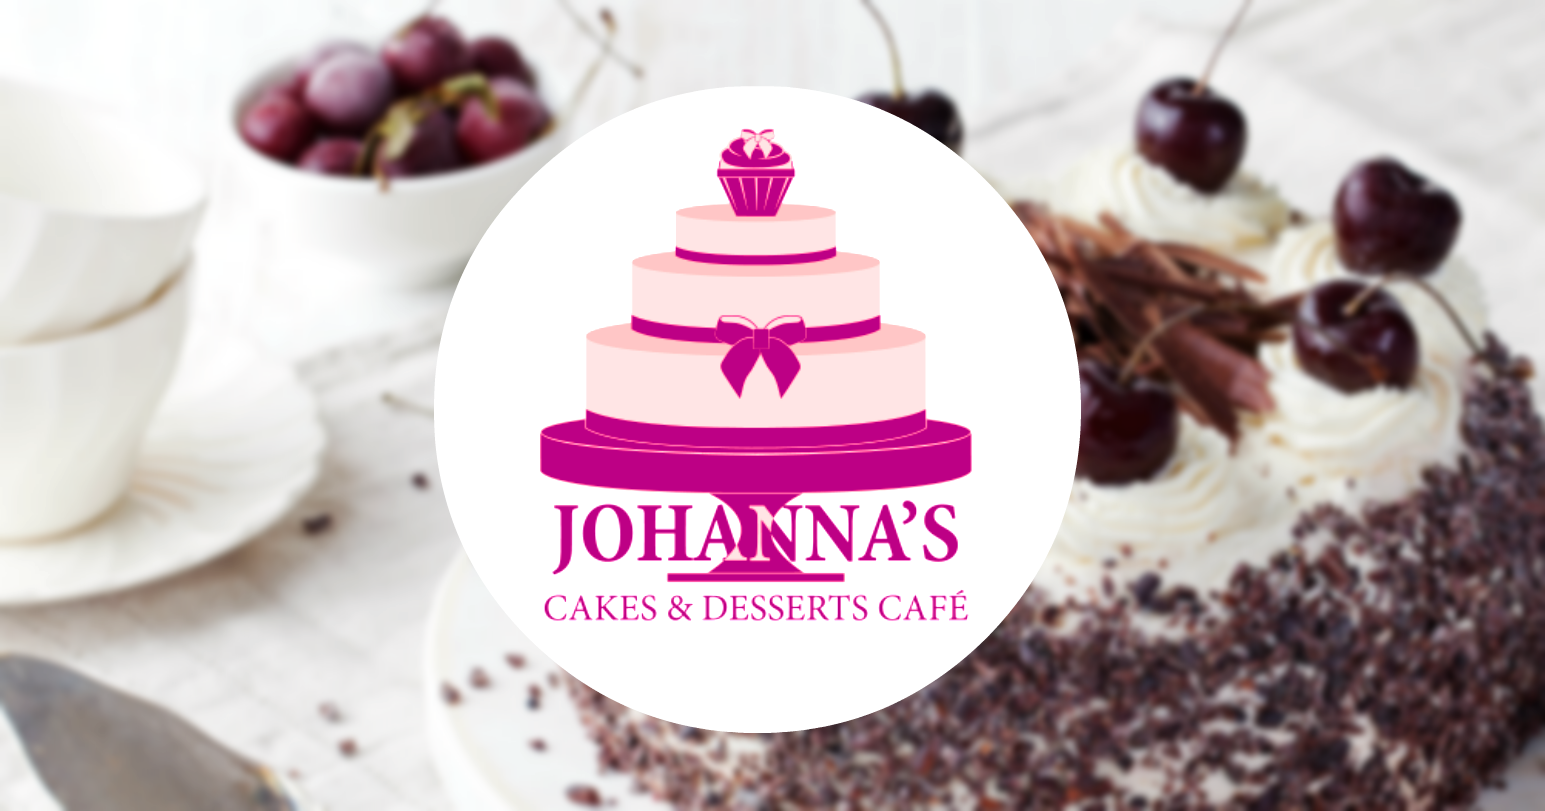 Johannas Cakes And Desserts Cafe